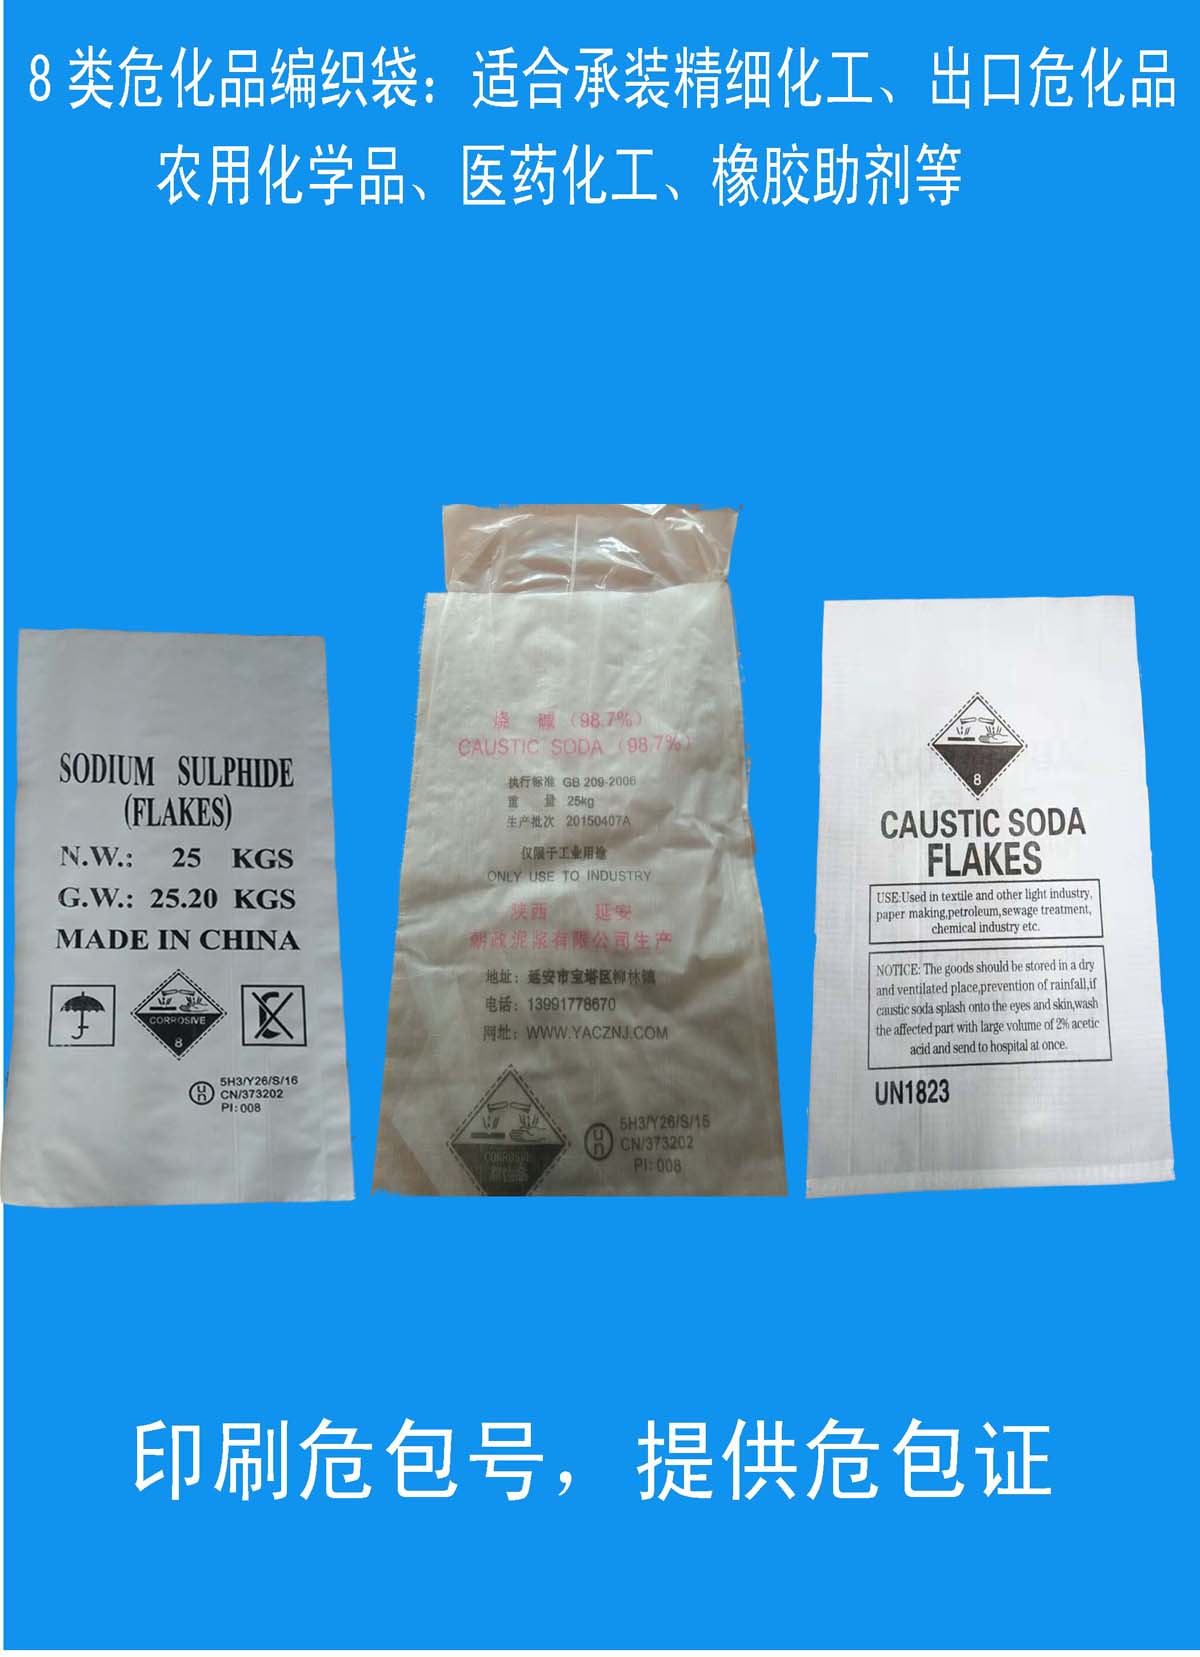 化工危包编织袋 危化品编织袋厂家—提供UN危包出口商检单图片